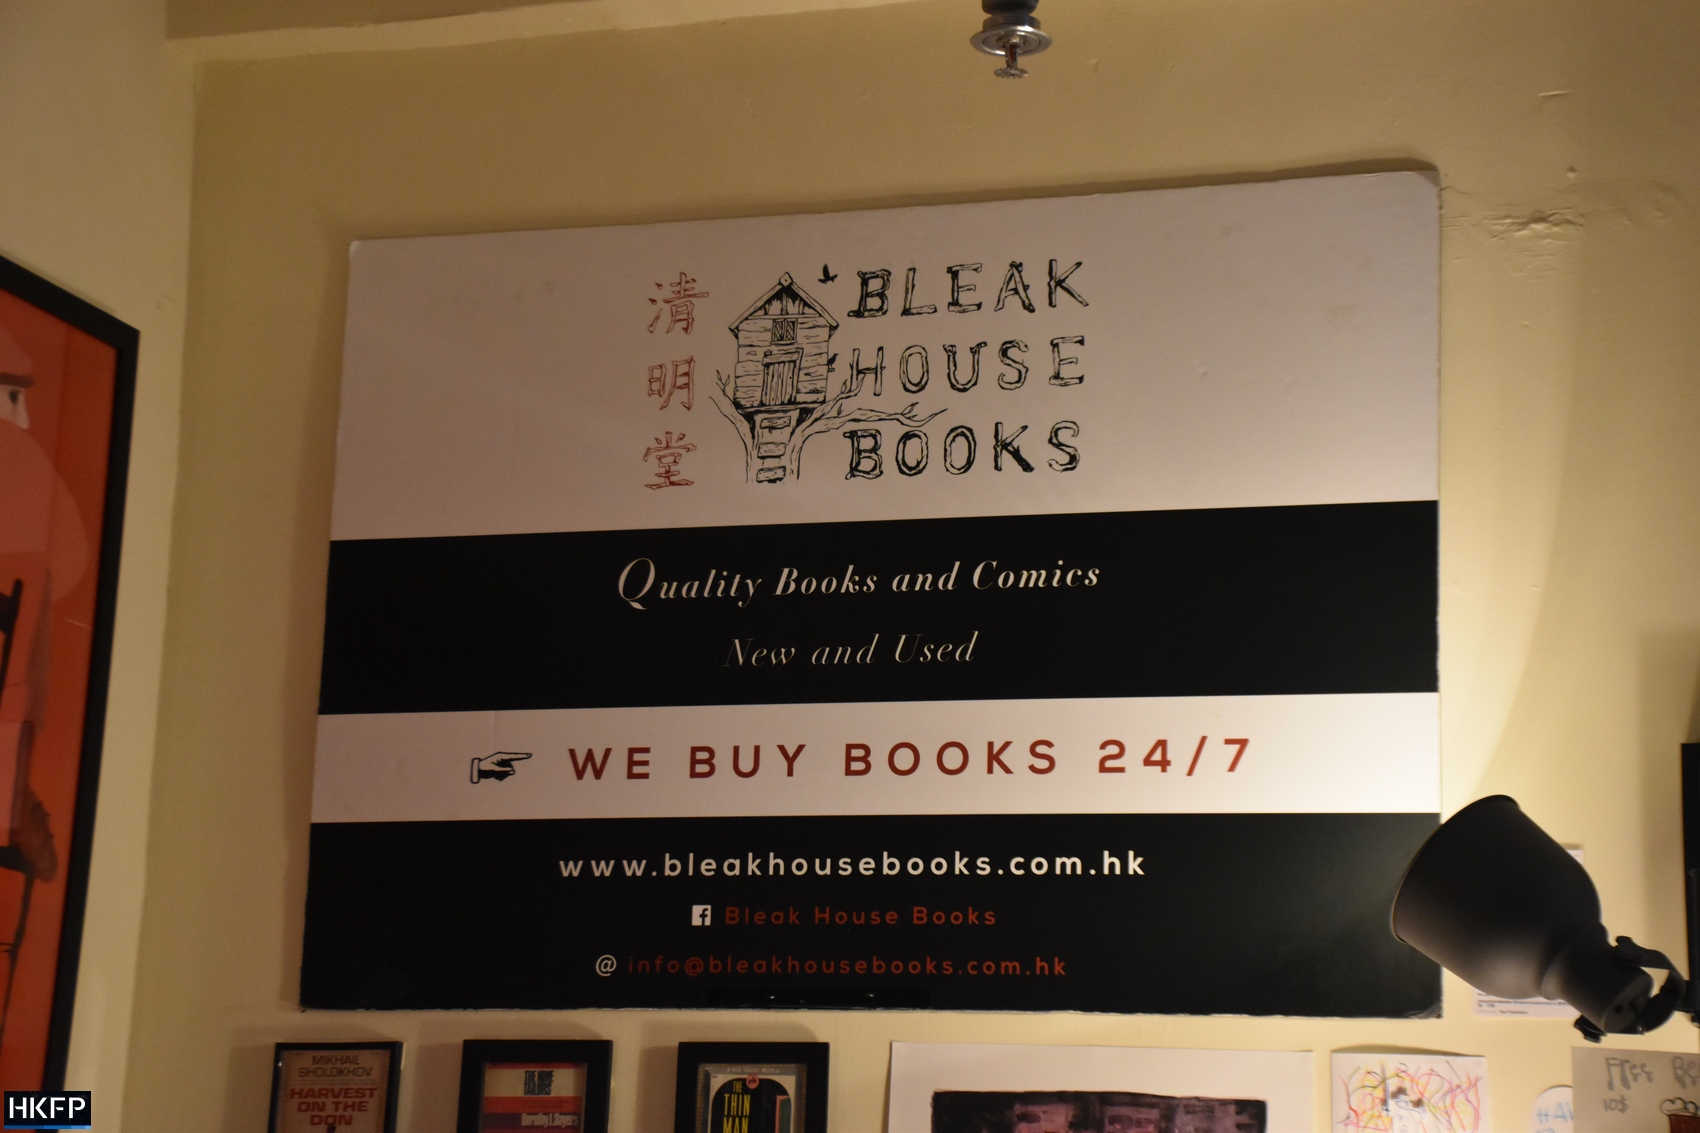 Bleak House Books